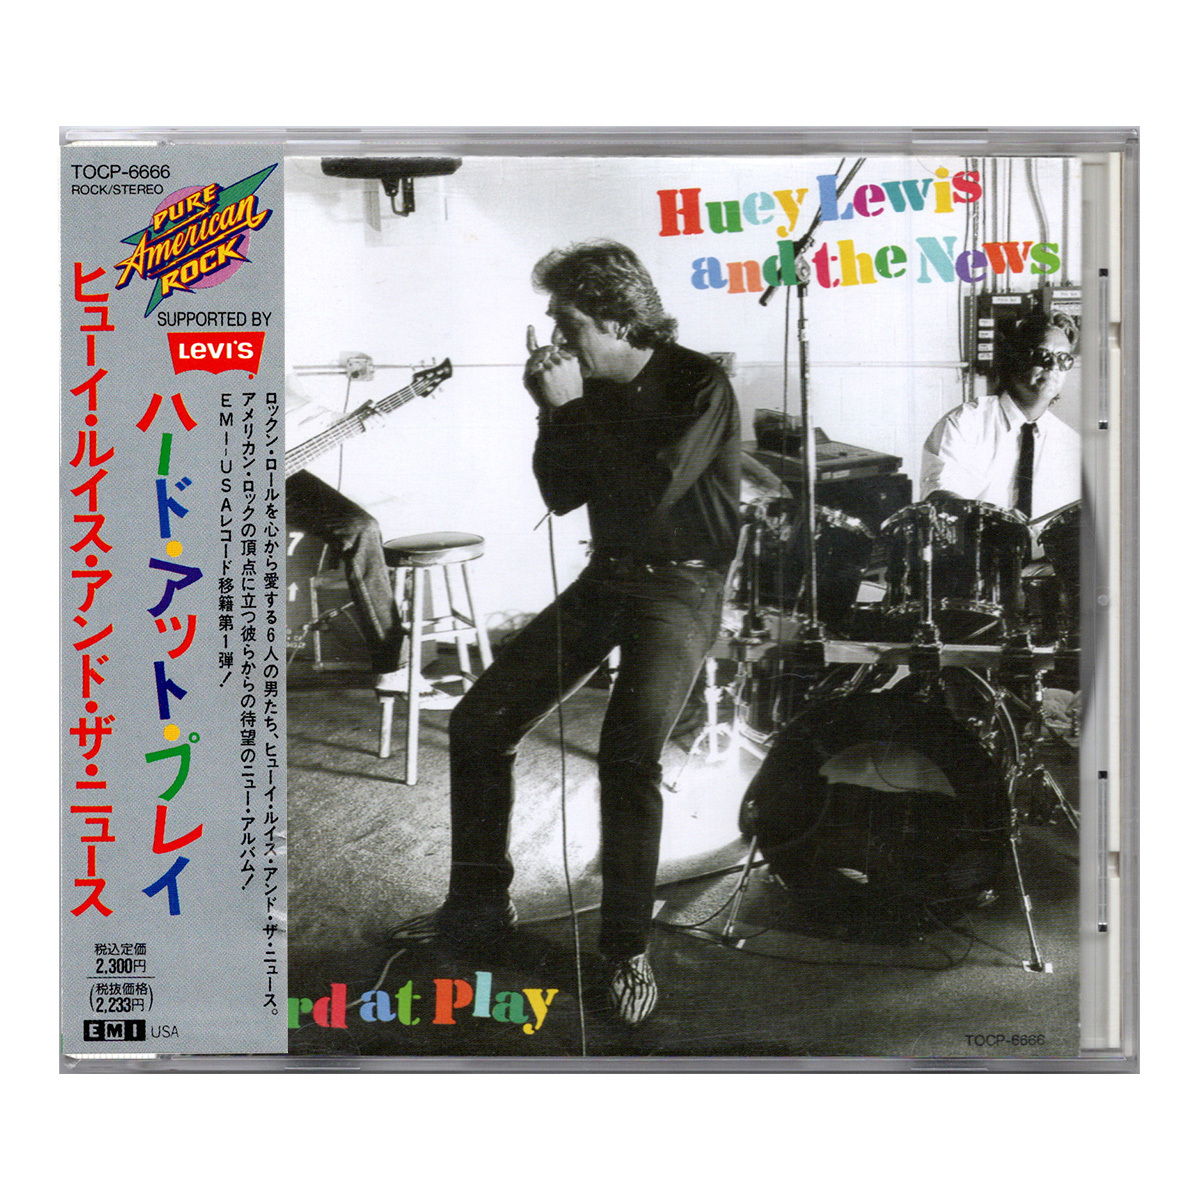 国内初リリース盤 《CD》 Huey Lewis and the News / Hard at Play [TOCP-6666] ヒューイ・ルイス ハード・アット・プレイ_画像1